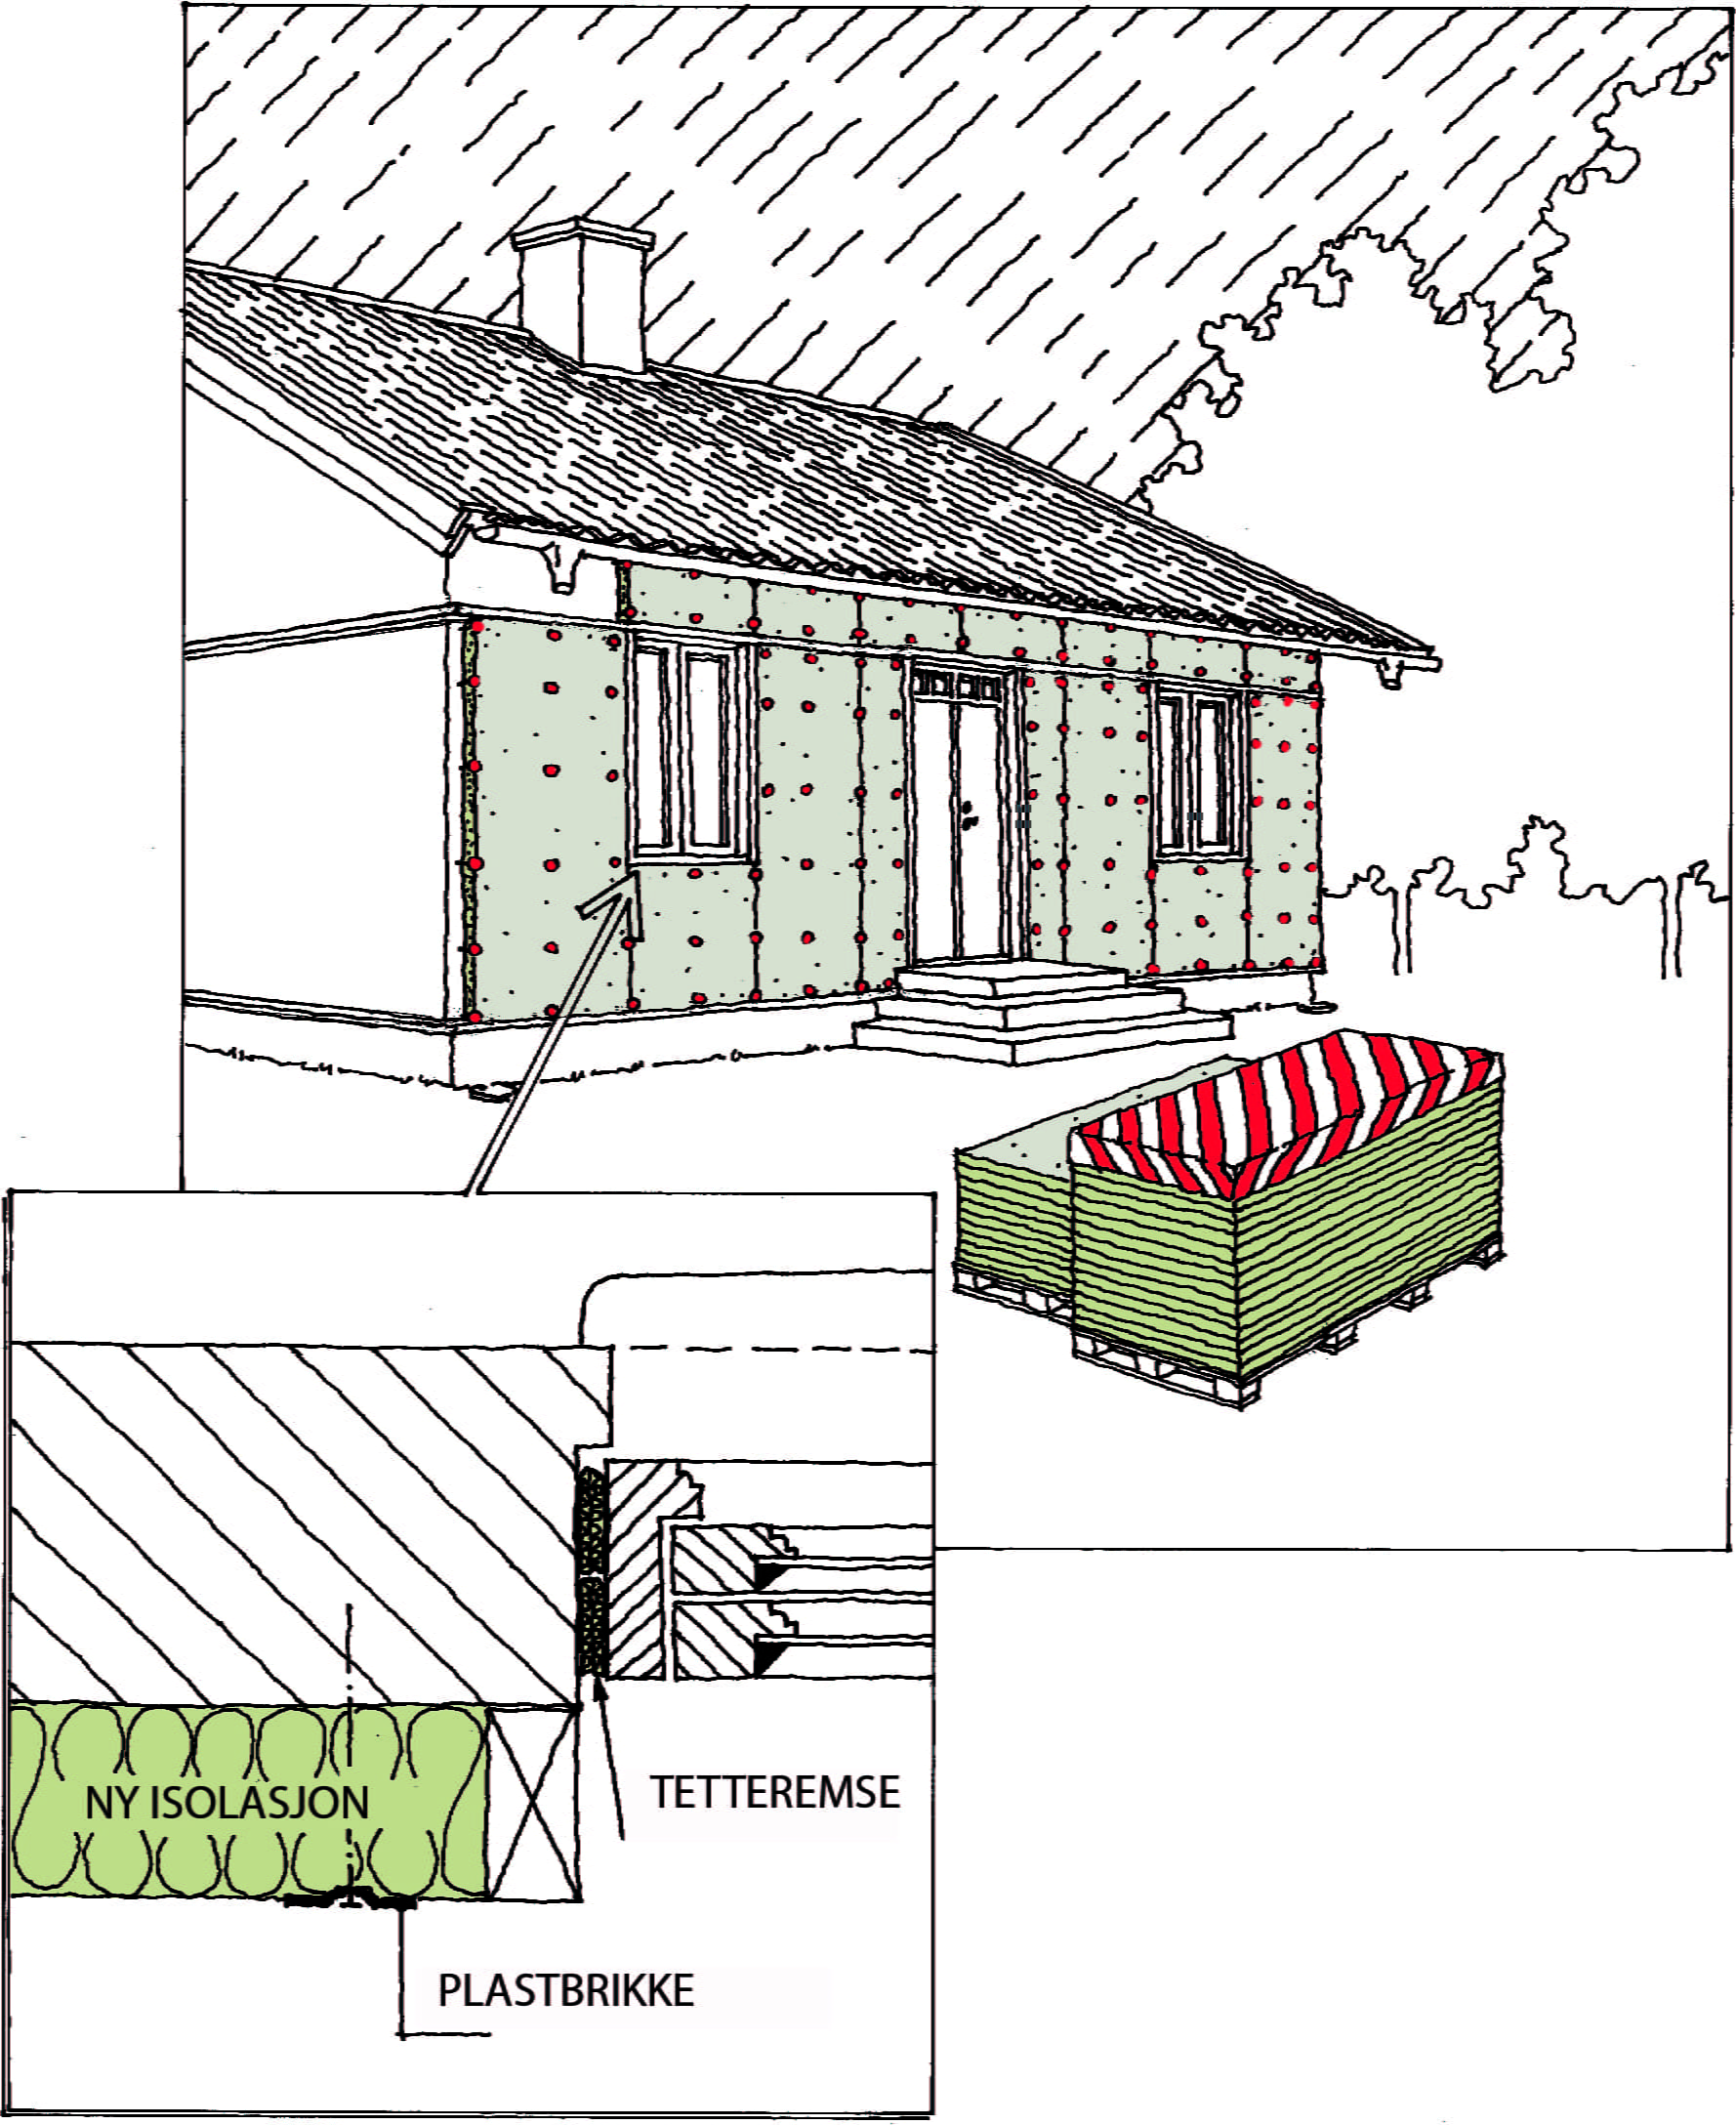 Renovera och tilläggsisolera fasaden med Klimatskivan